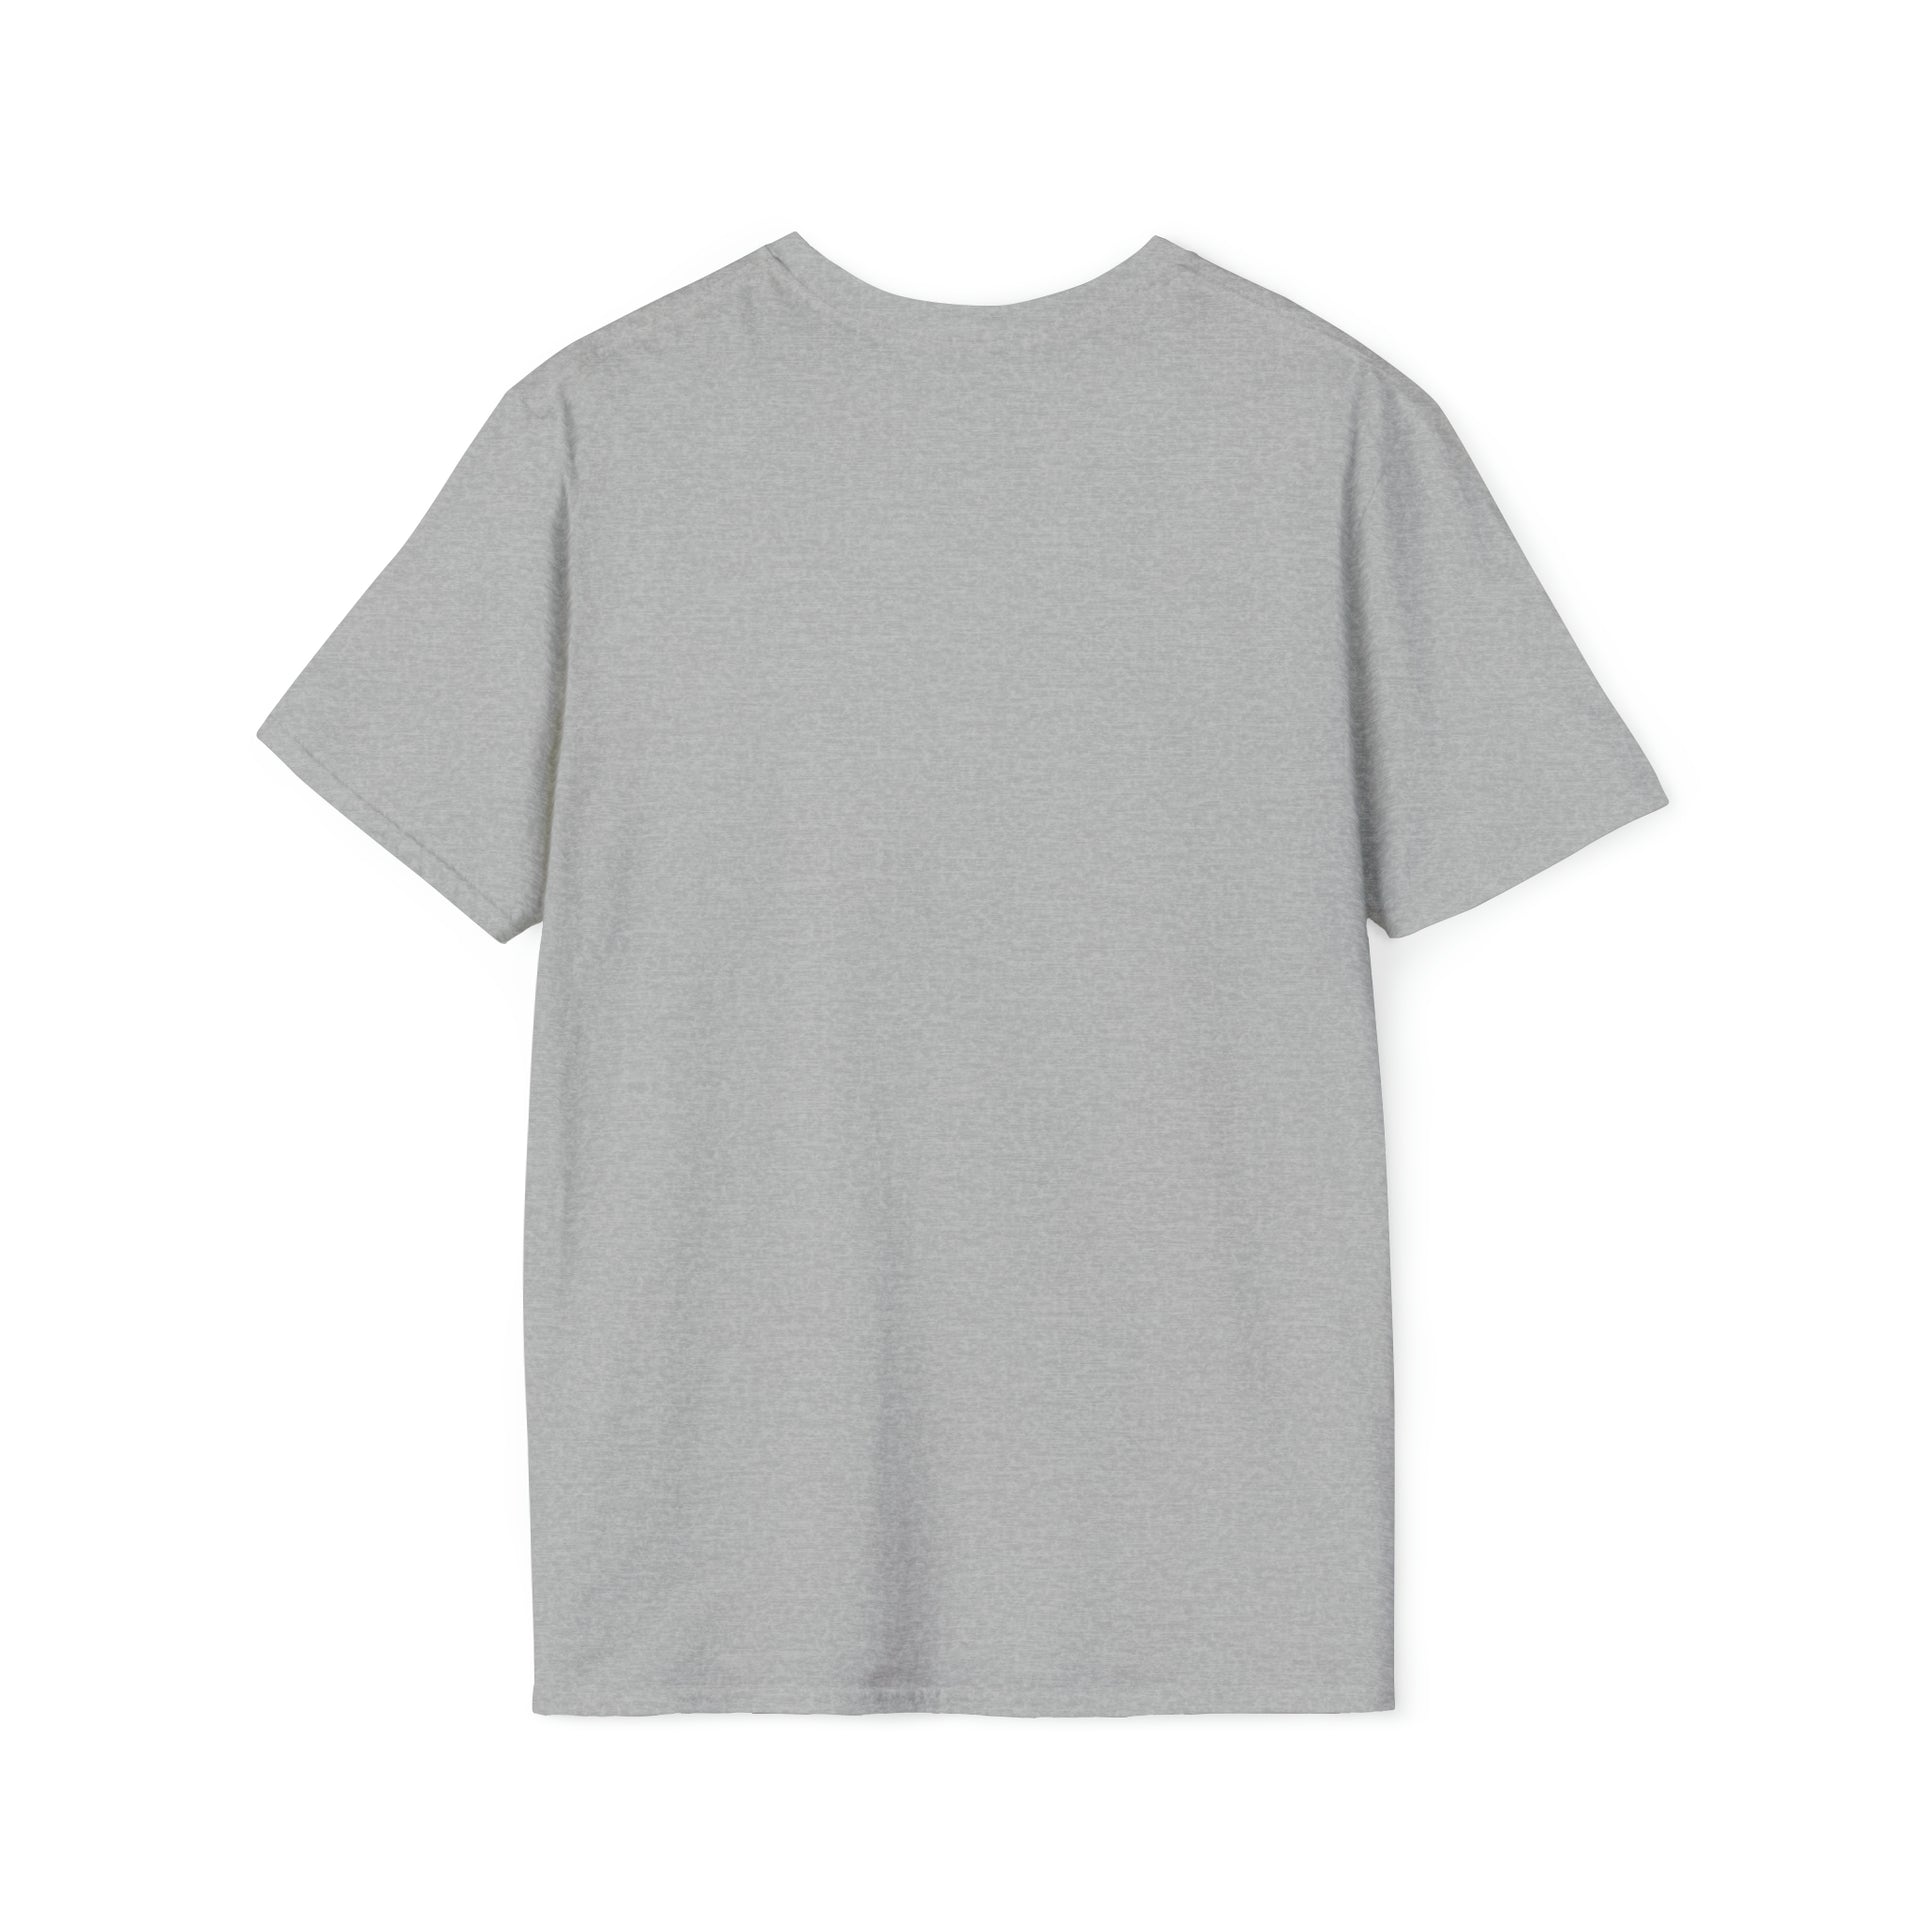 Veilid Unisex Softstyle T-Shirt